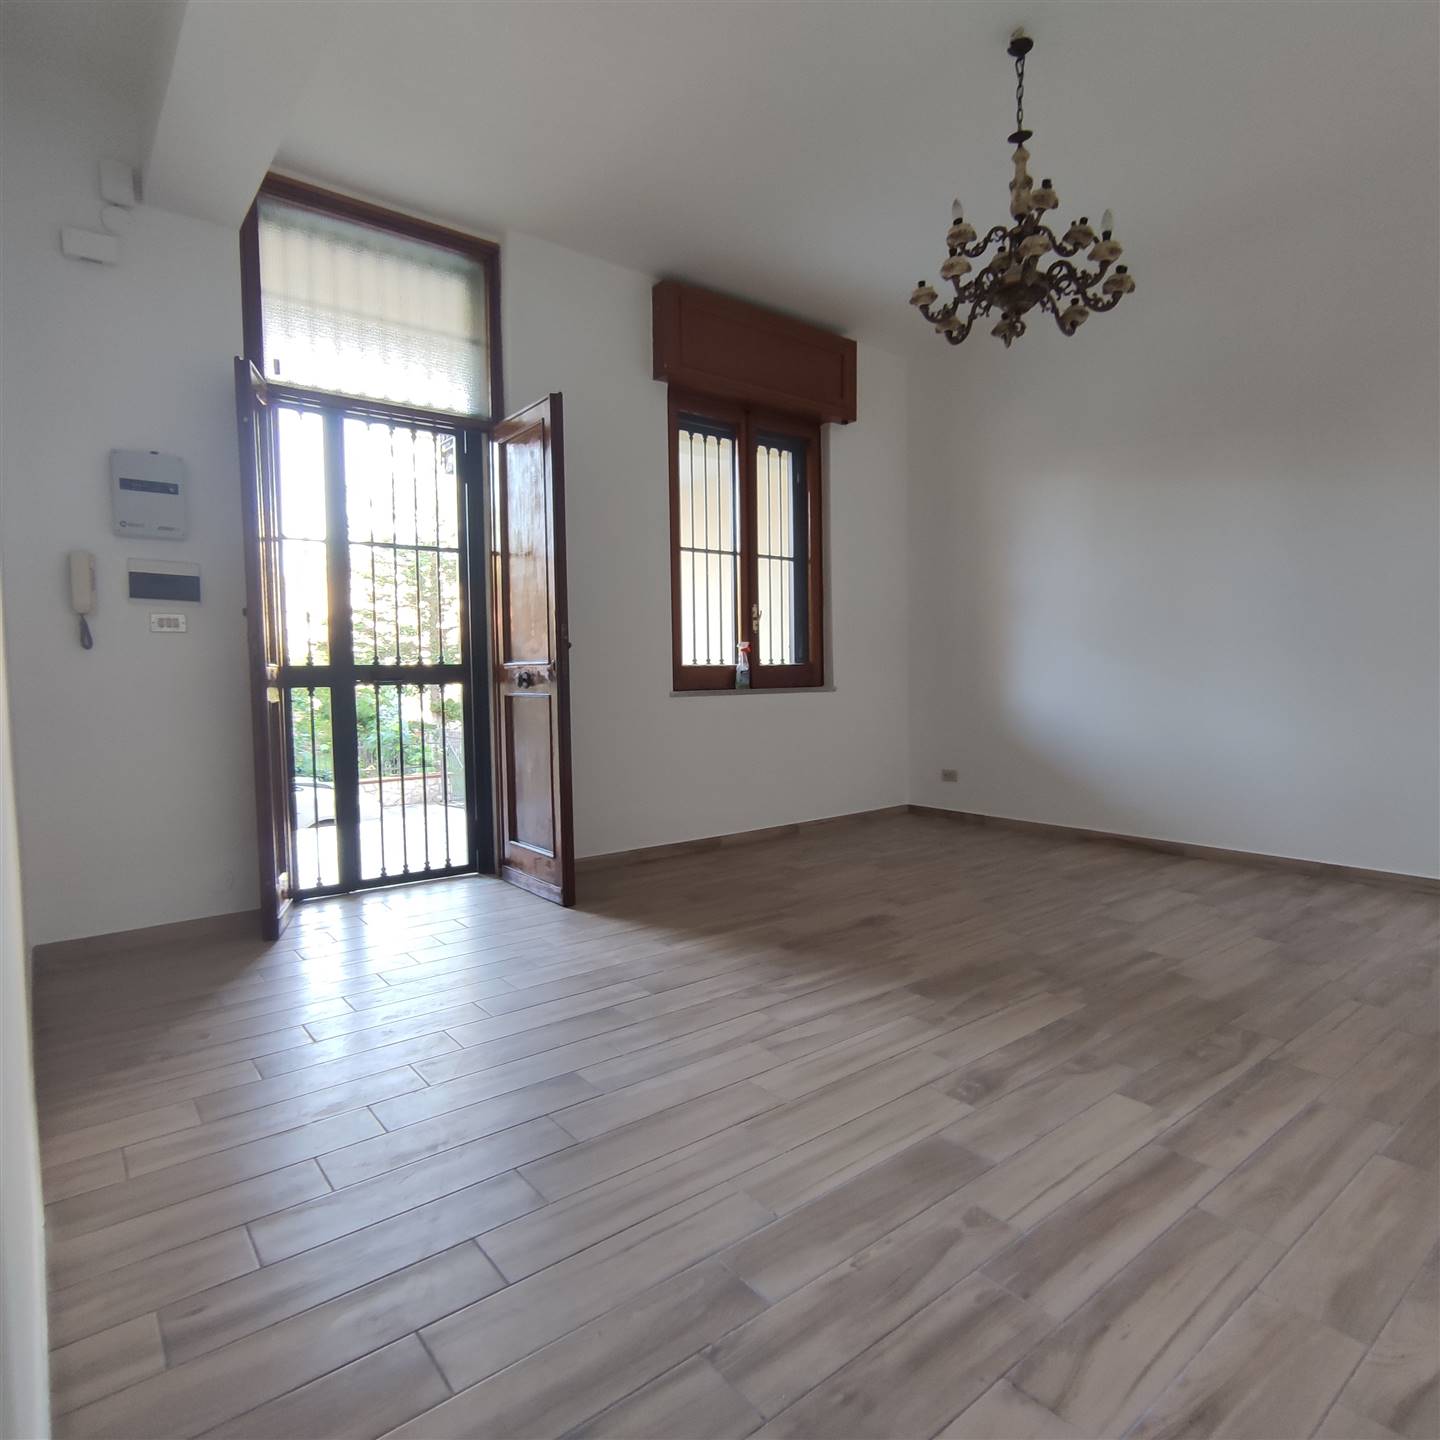 Appartamento in affitto a Caserta, 3 locali, zona Zona: Petrarelle, prezzo € 550 | CambioCasa.it